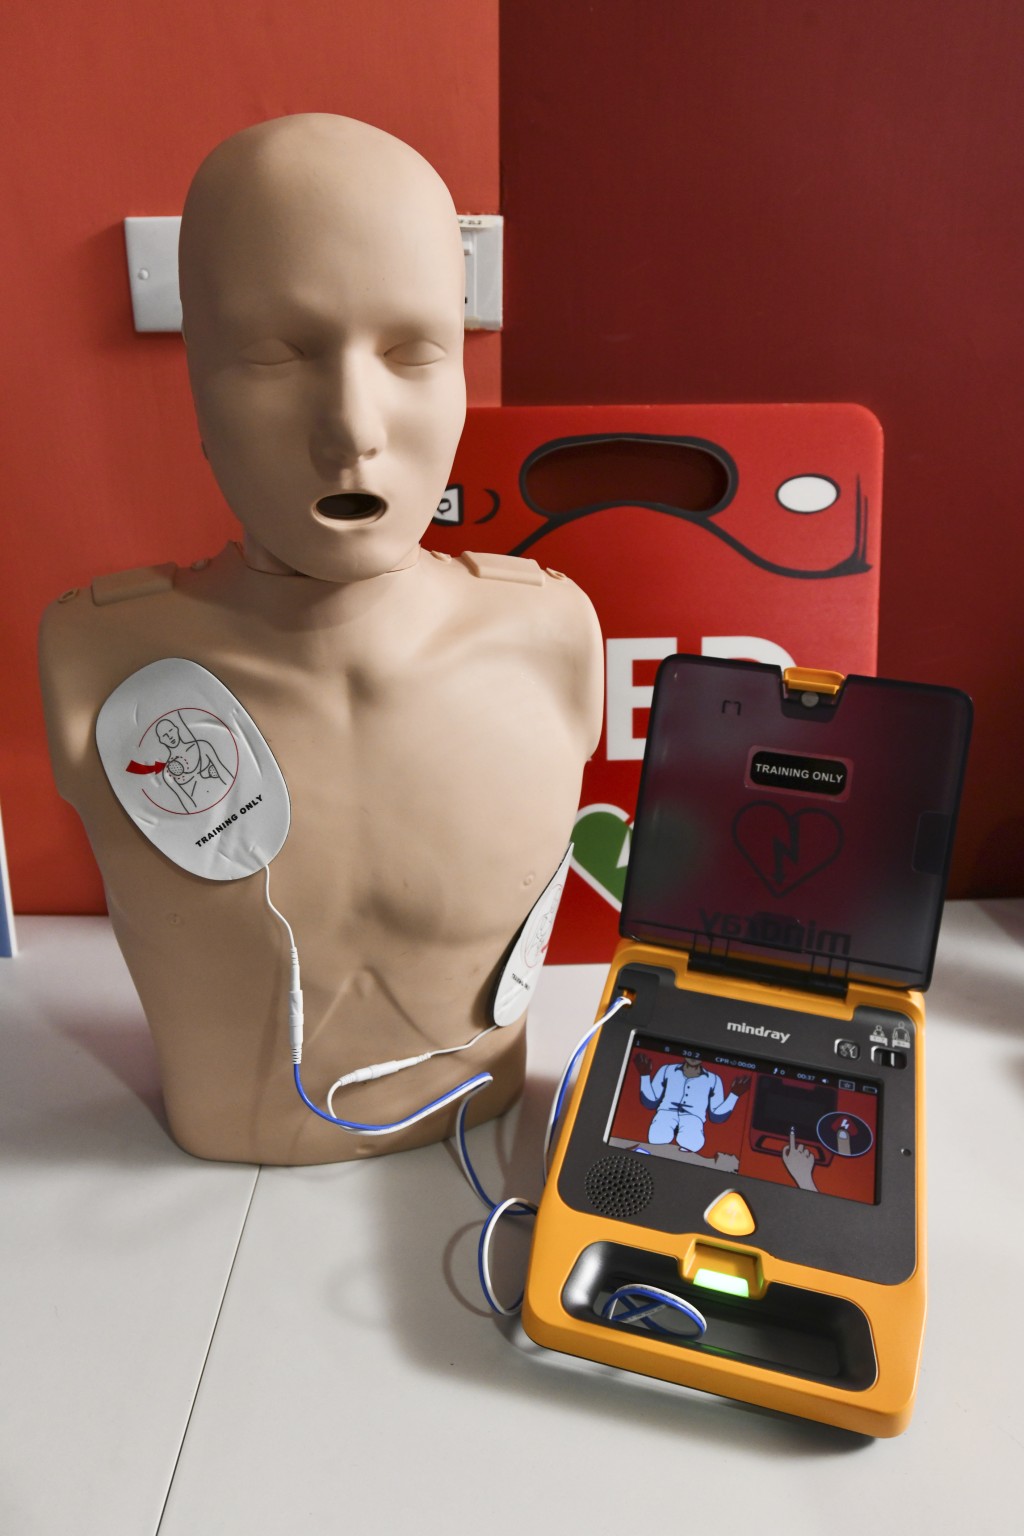 本港现时约有2,700部AED已登记在消防处的「AED搵得到」网上资讯平台。资料图片